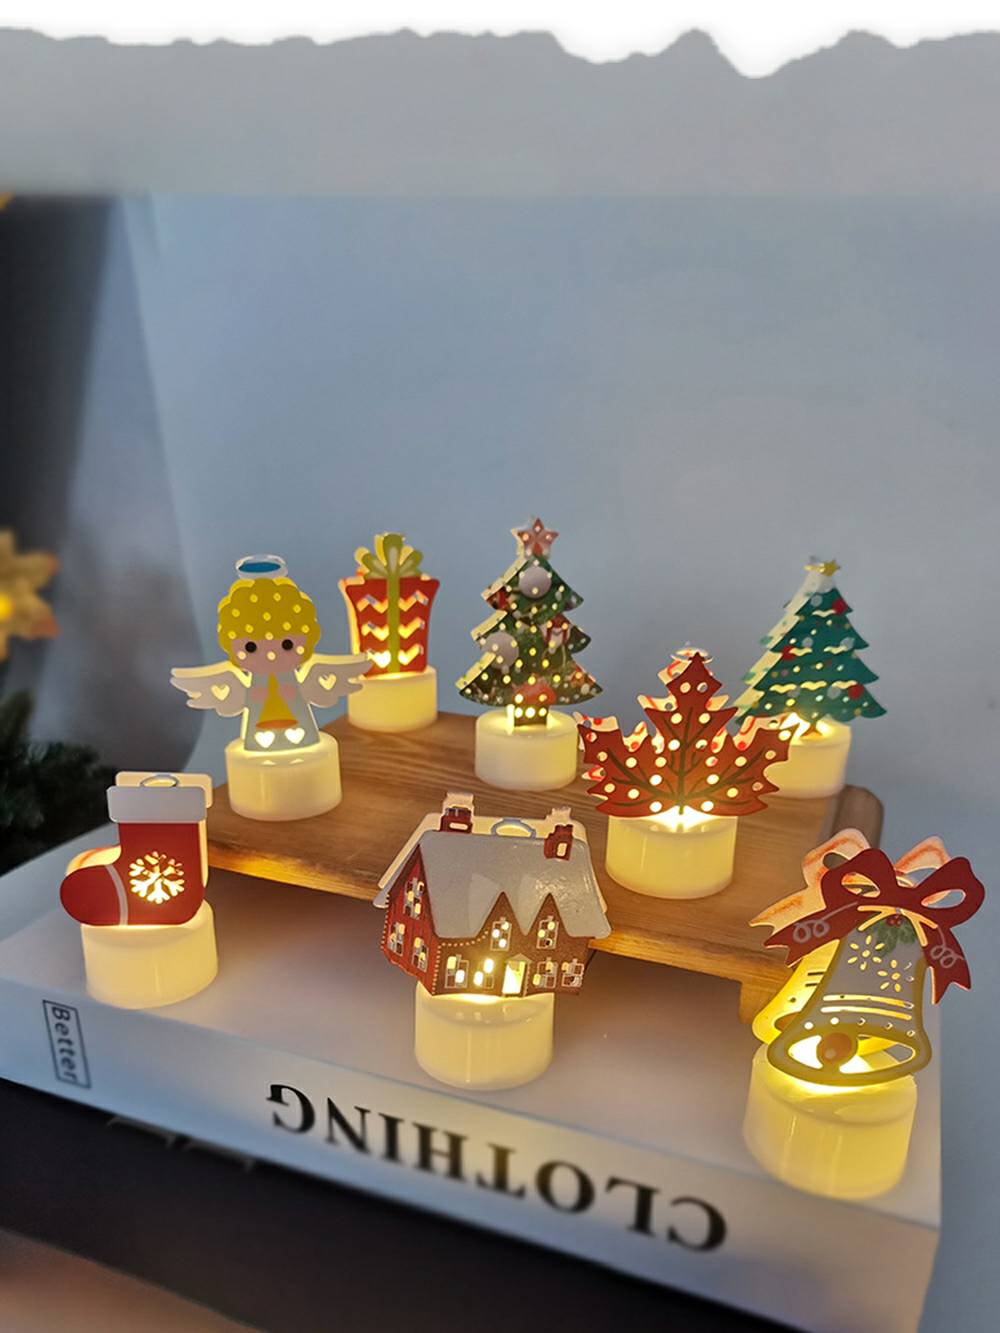 Decoraciones navideñas iluminadas con encantadores personajes navideños